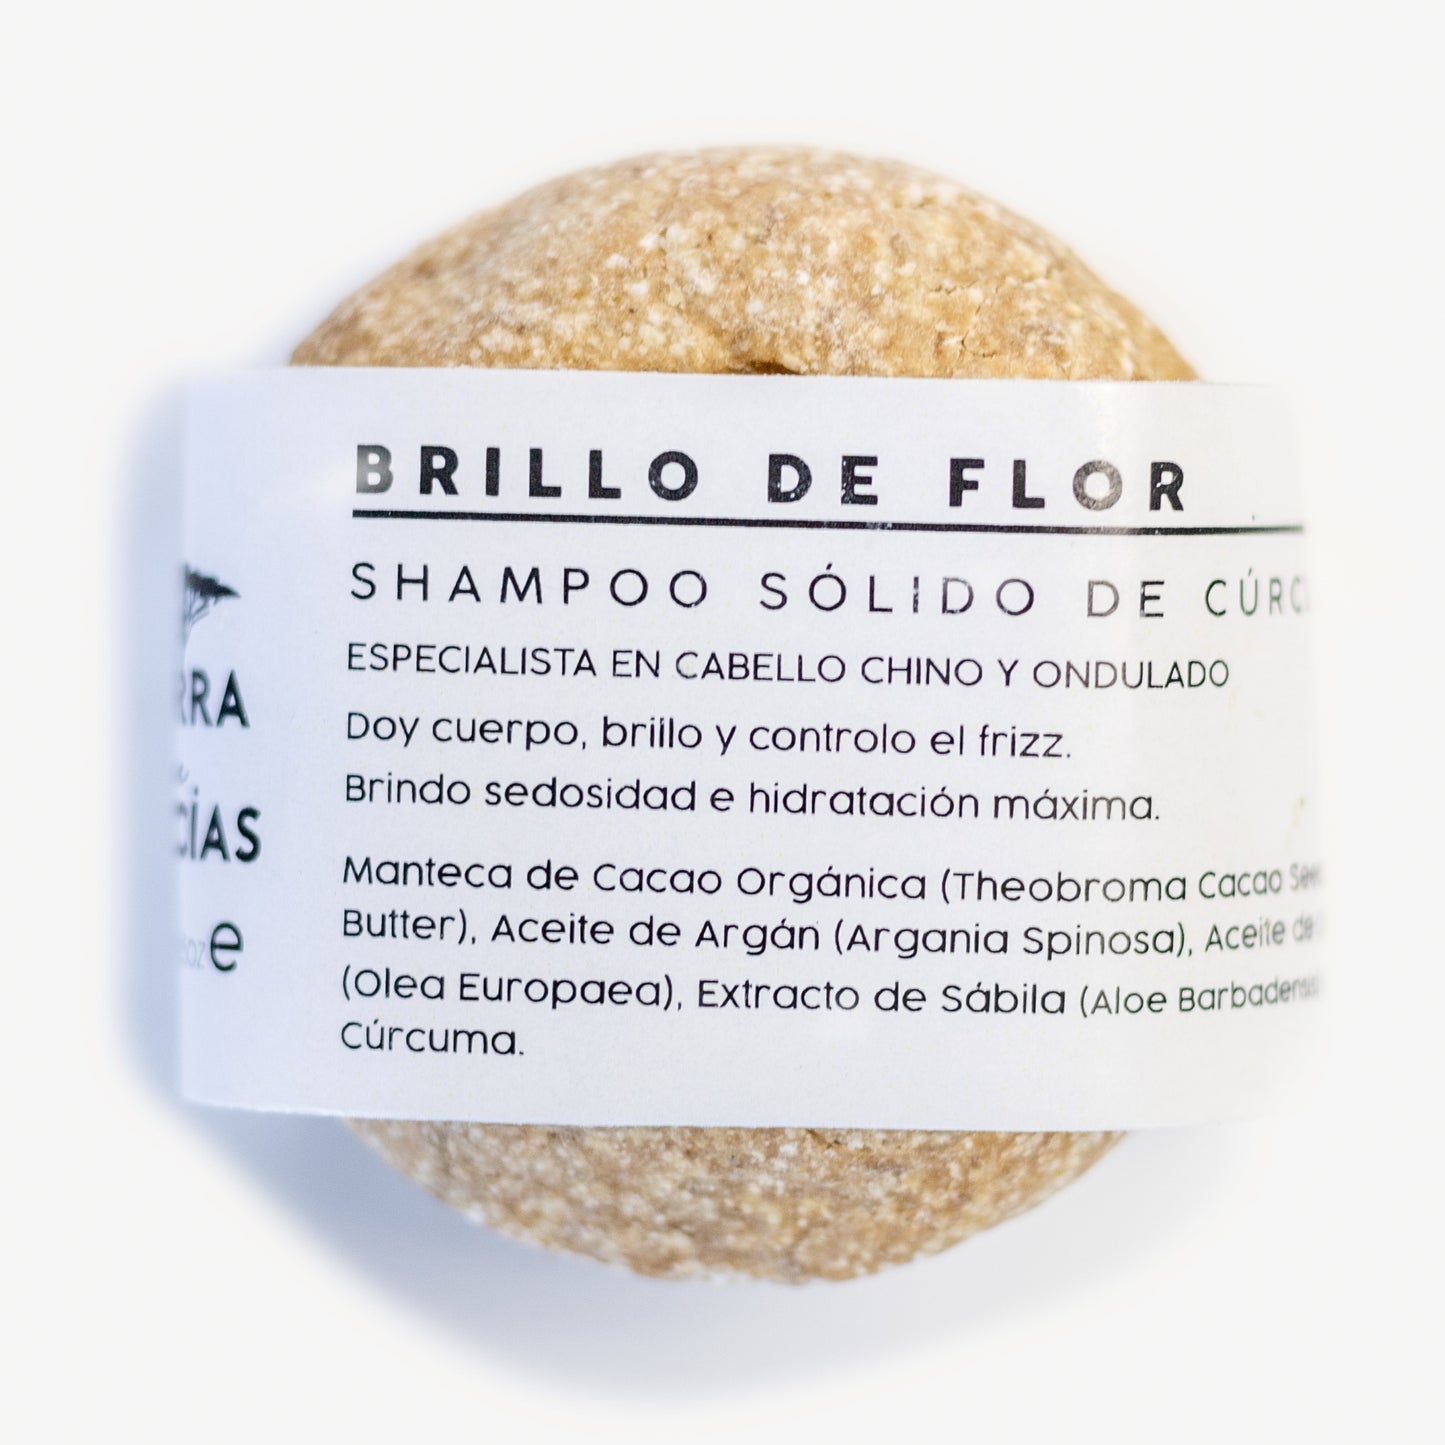 Brillo de Flor / Shampoo Sólido de Cúrcuma / Experto en Cabello Chino y Ondulado